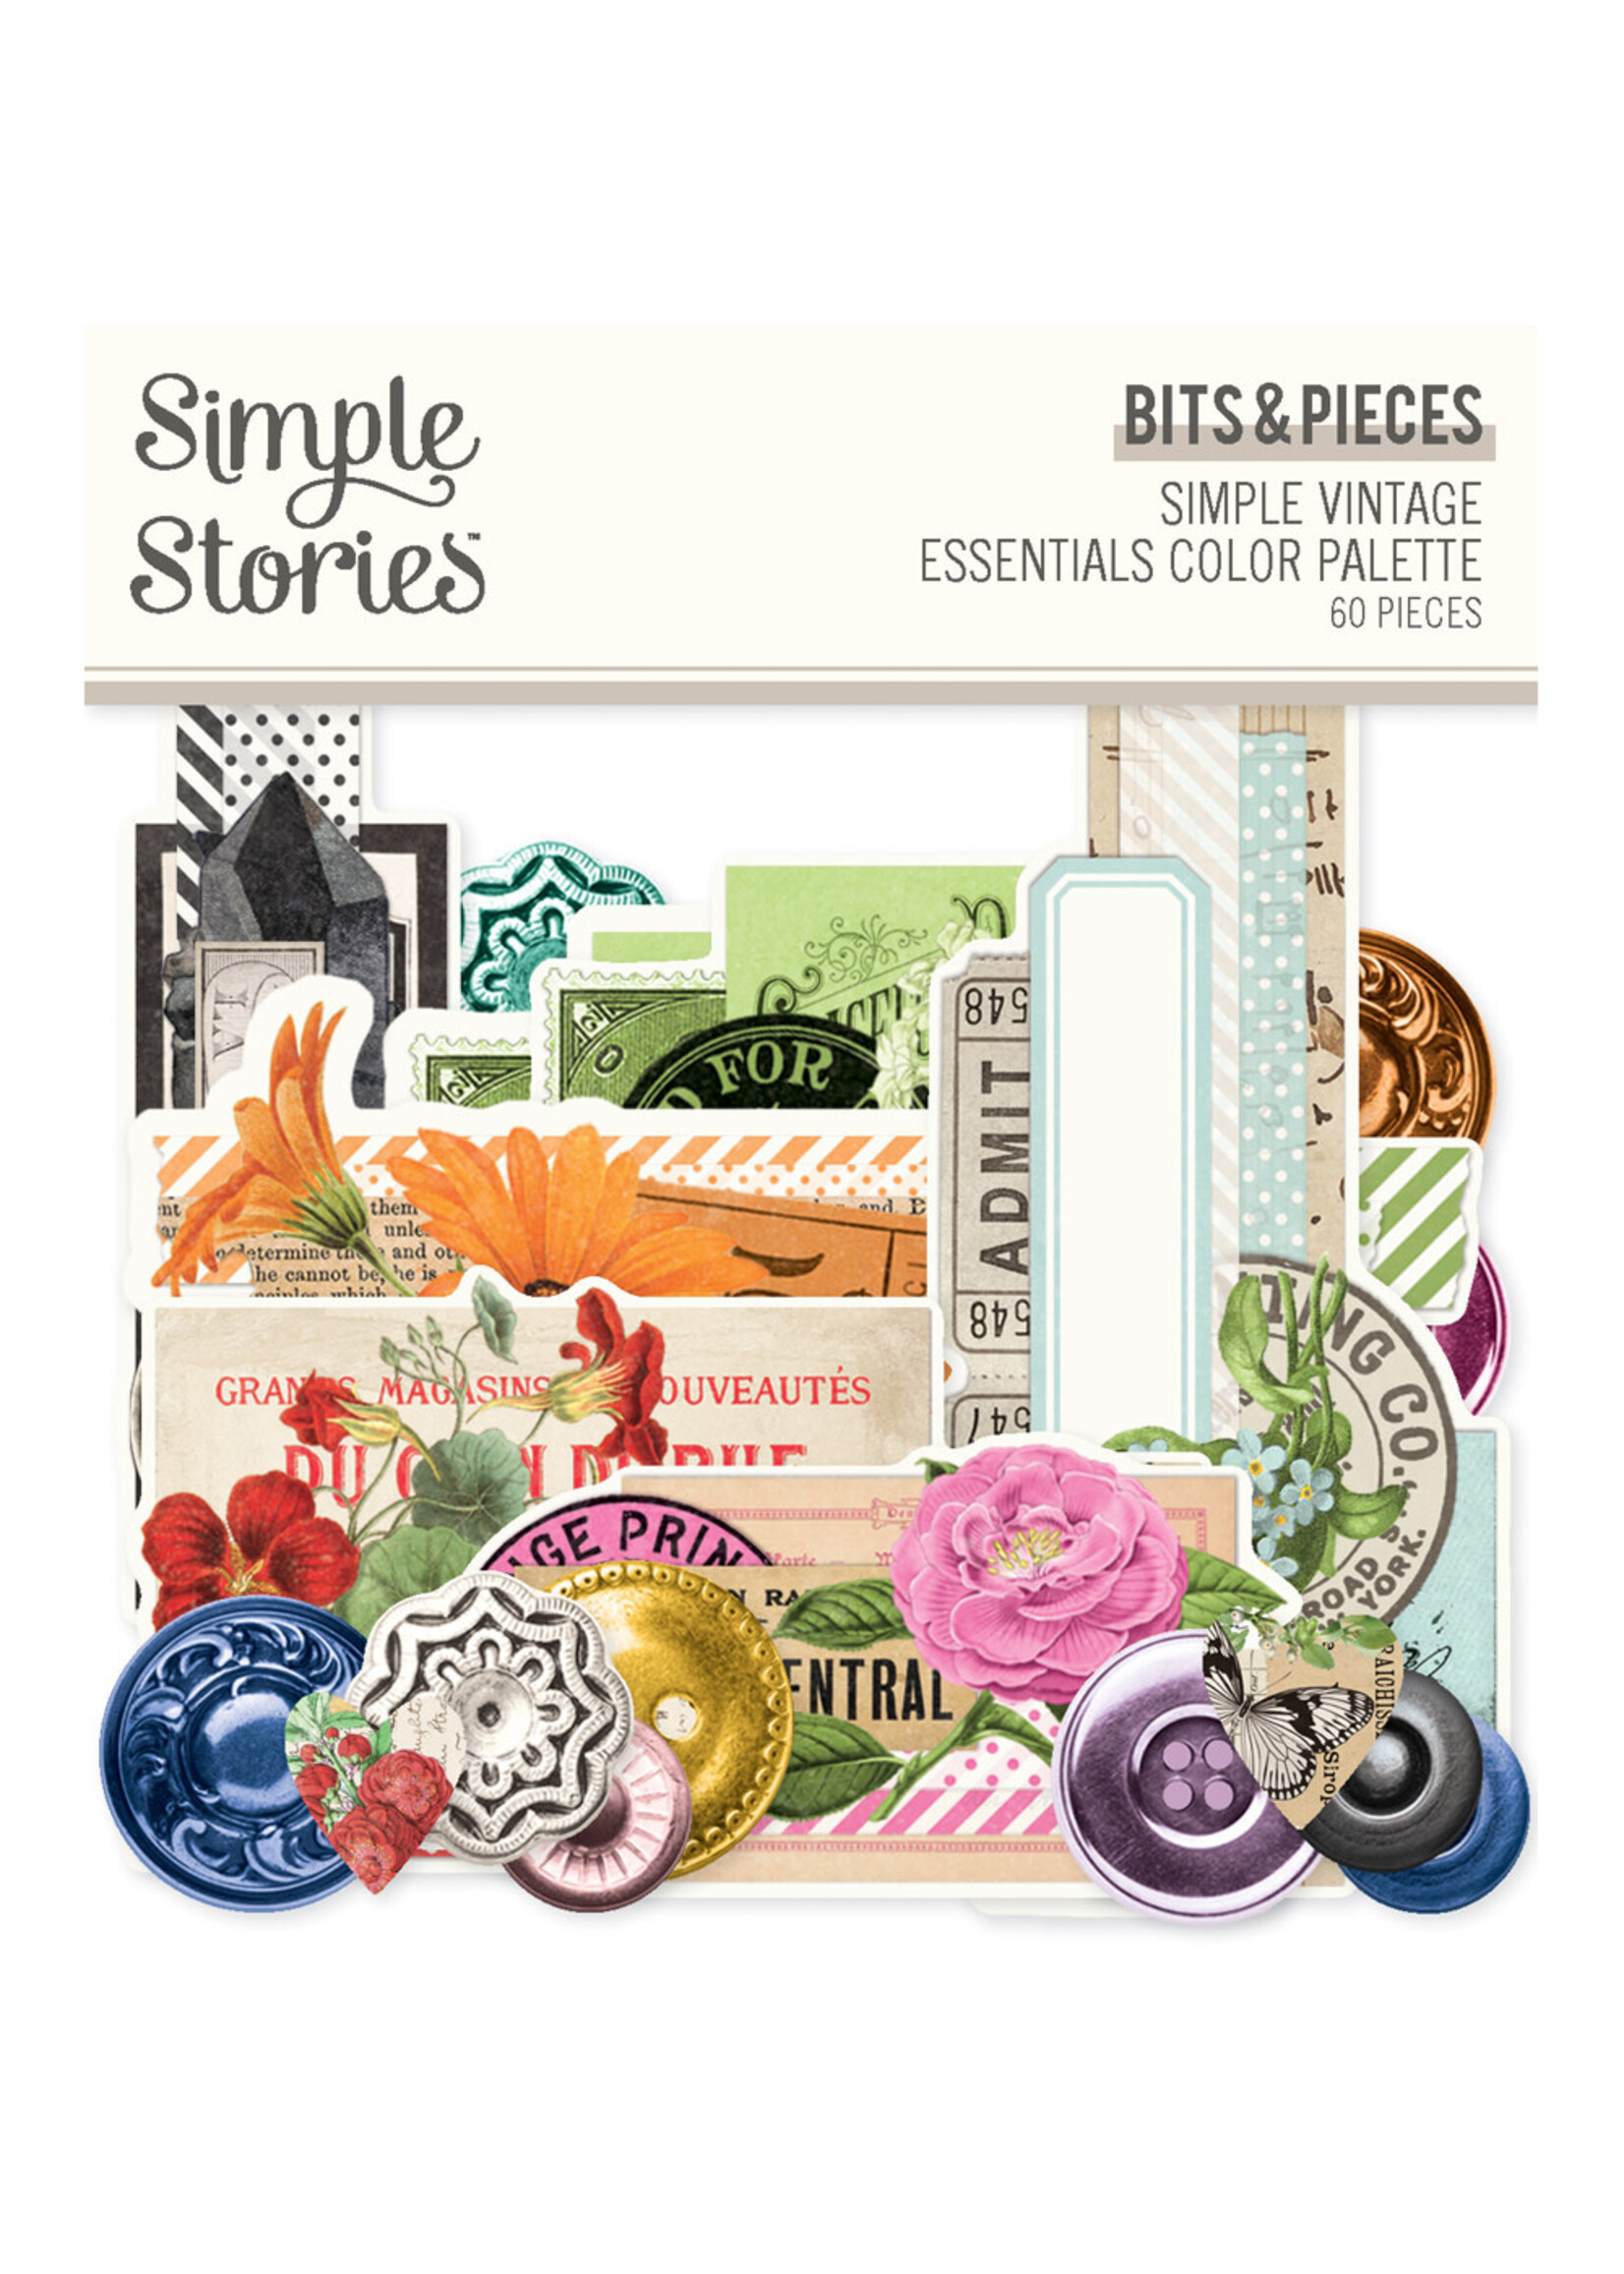 Simple Stories Simple Vintage Essentials Color Palette - Bits & Pieces